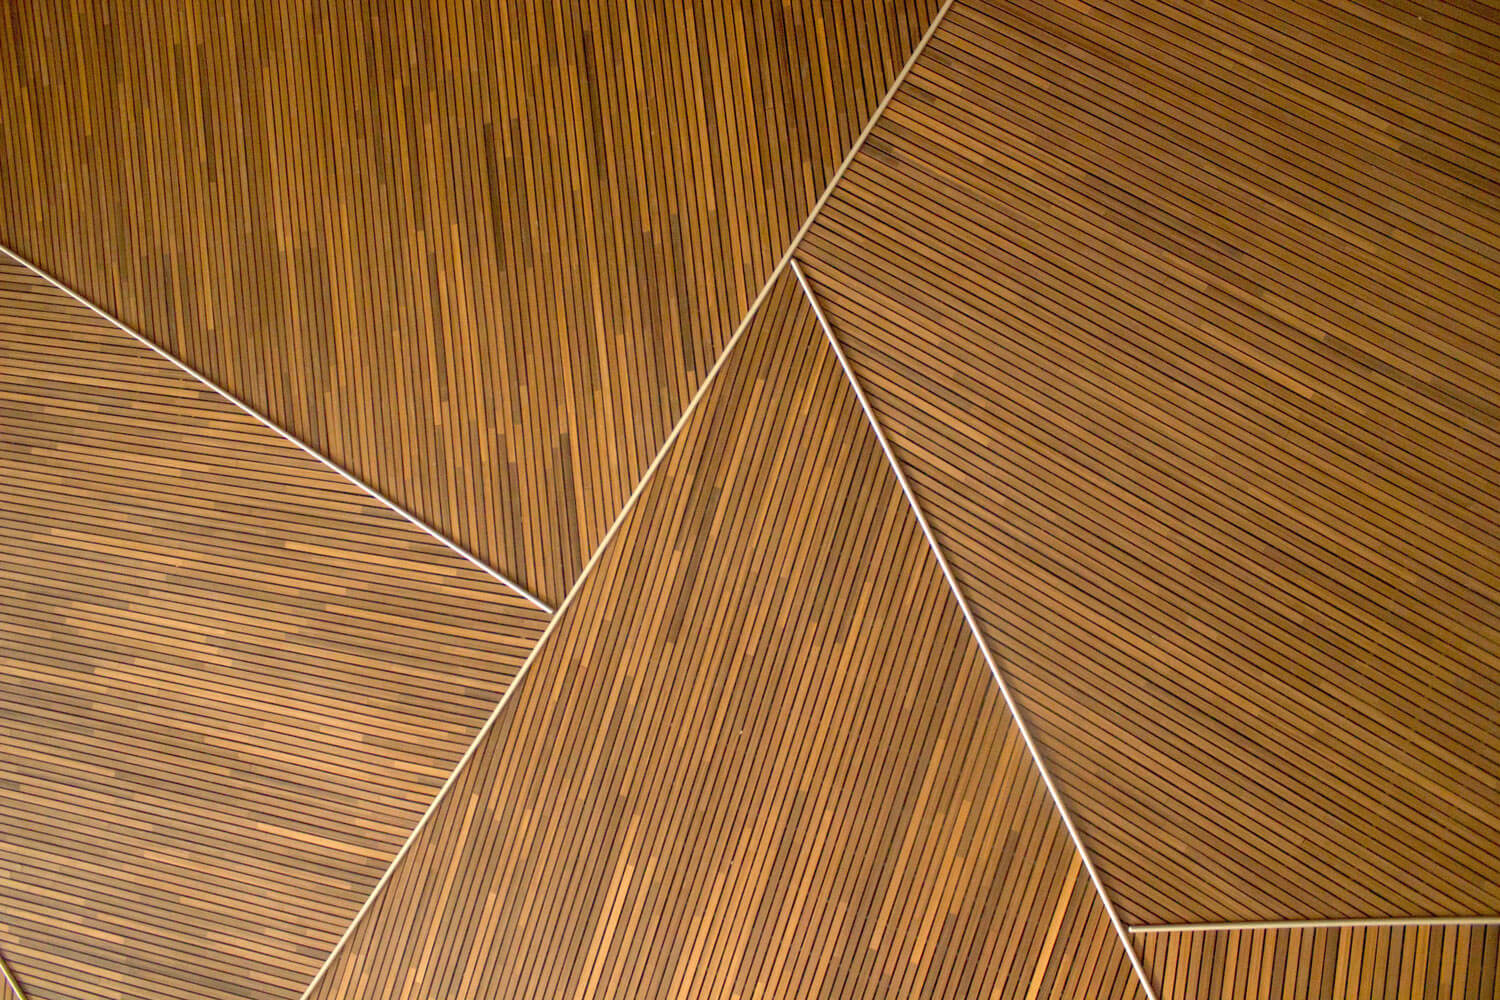 geometric wood